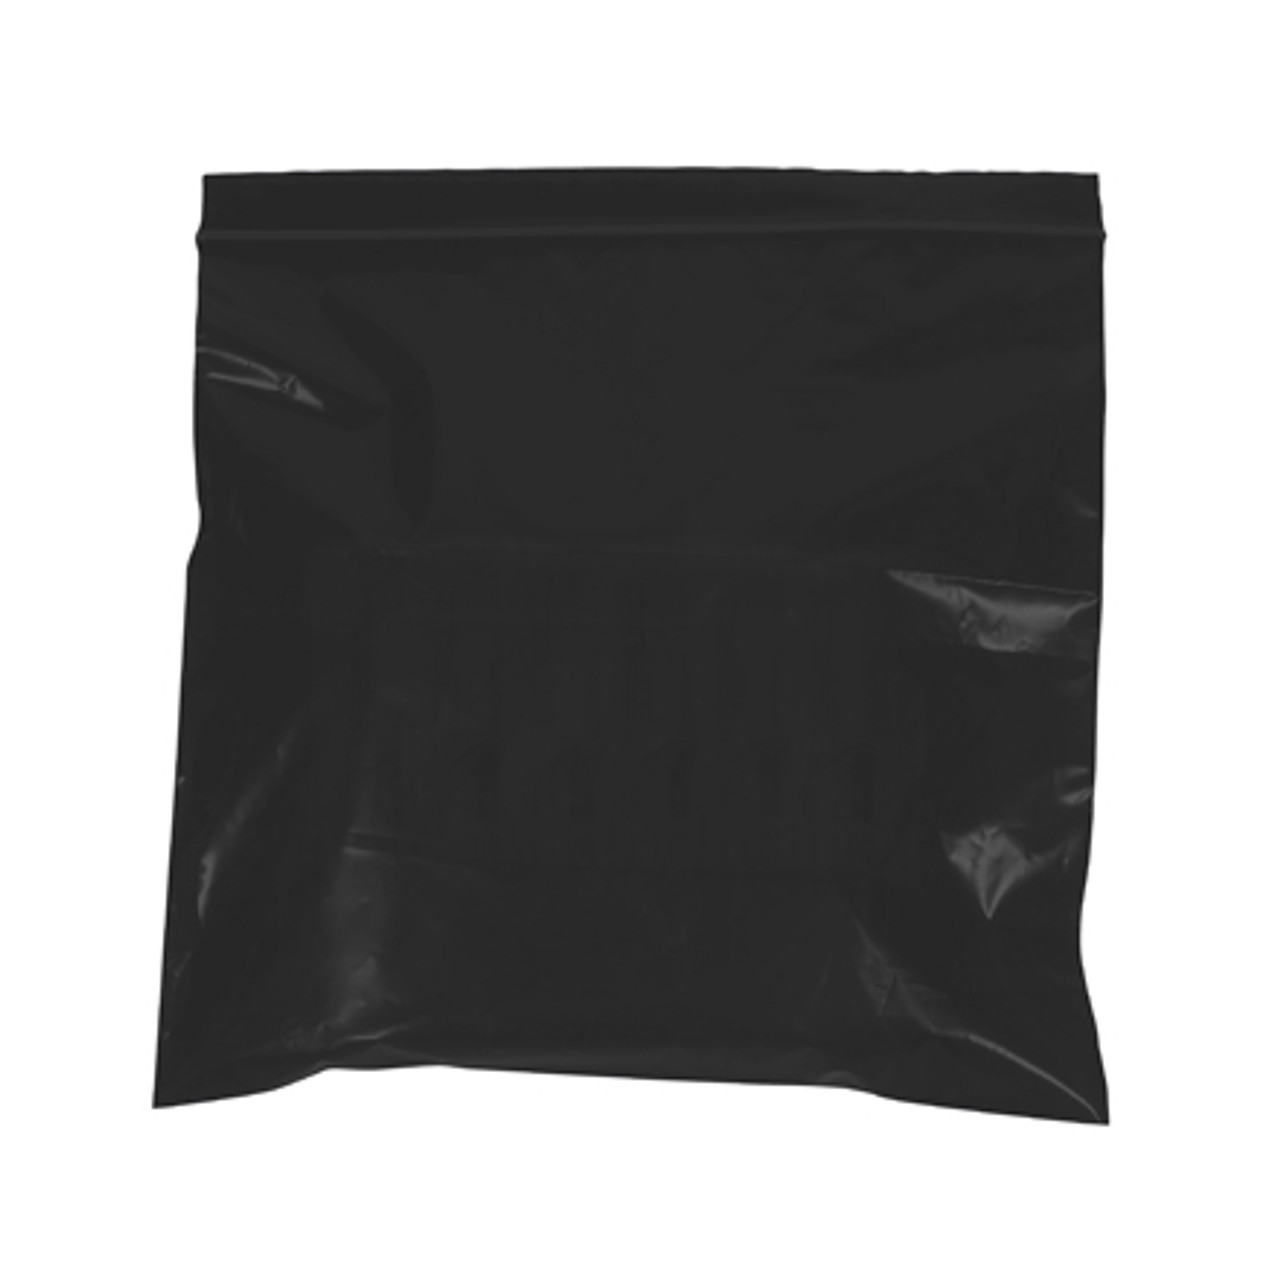 2 x 3 2 Mil Black Zip Bags